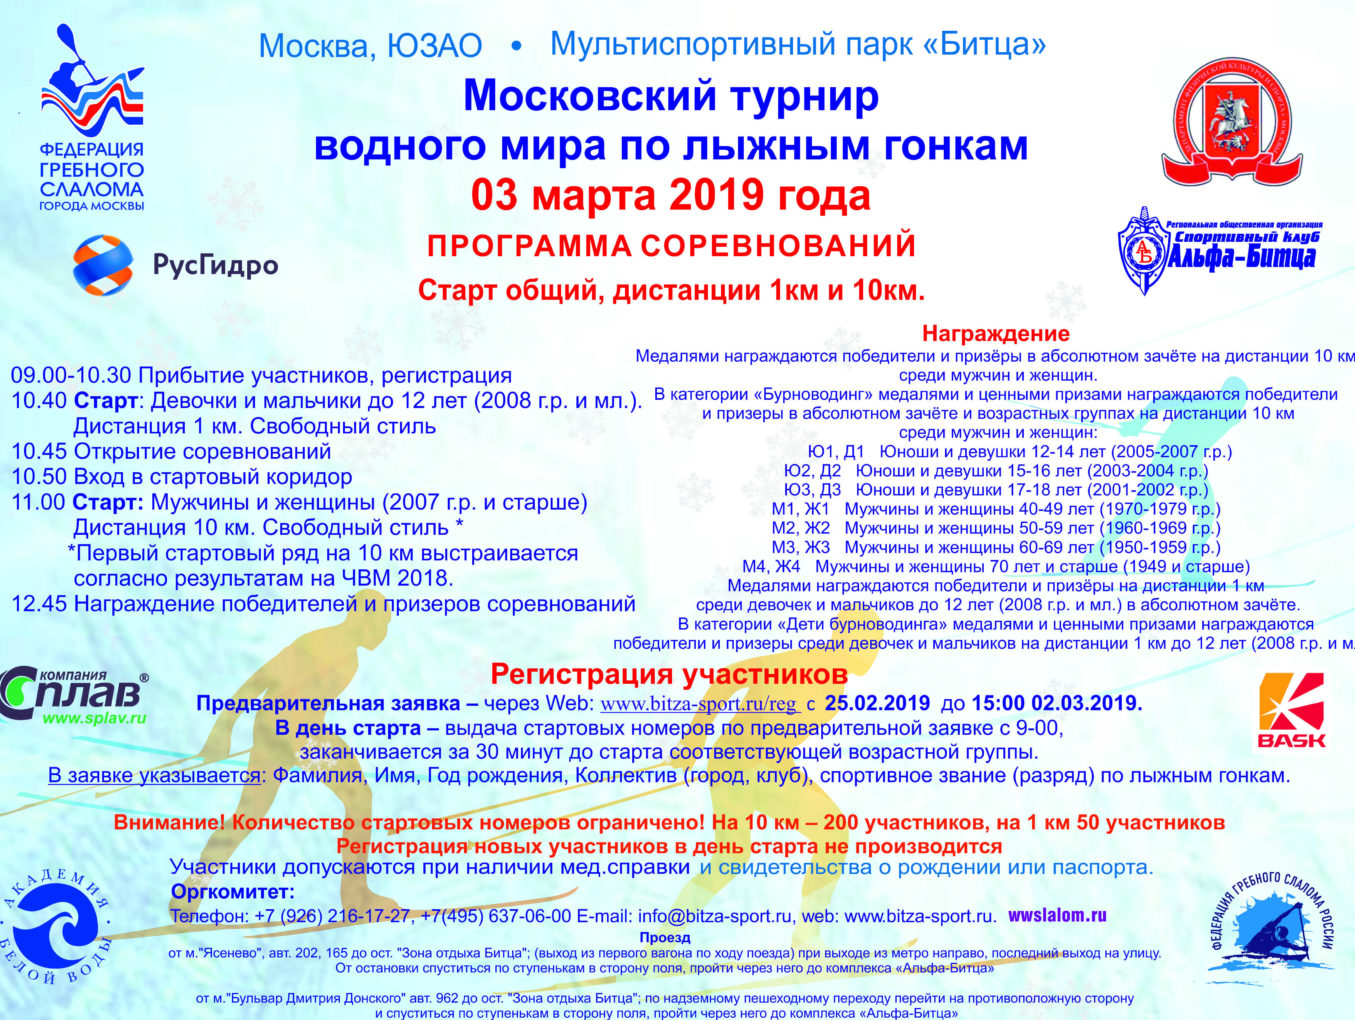 21-й Чемпионат водного мира по лыжным гонкам